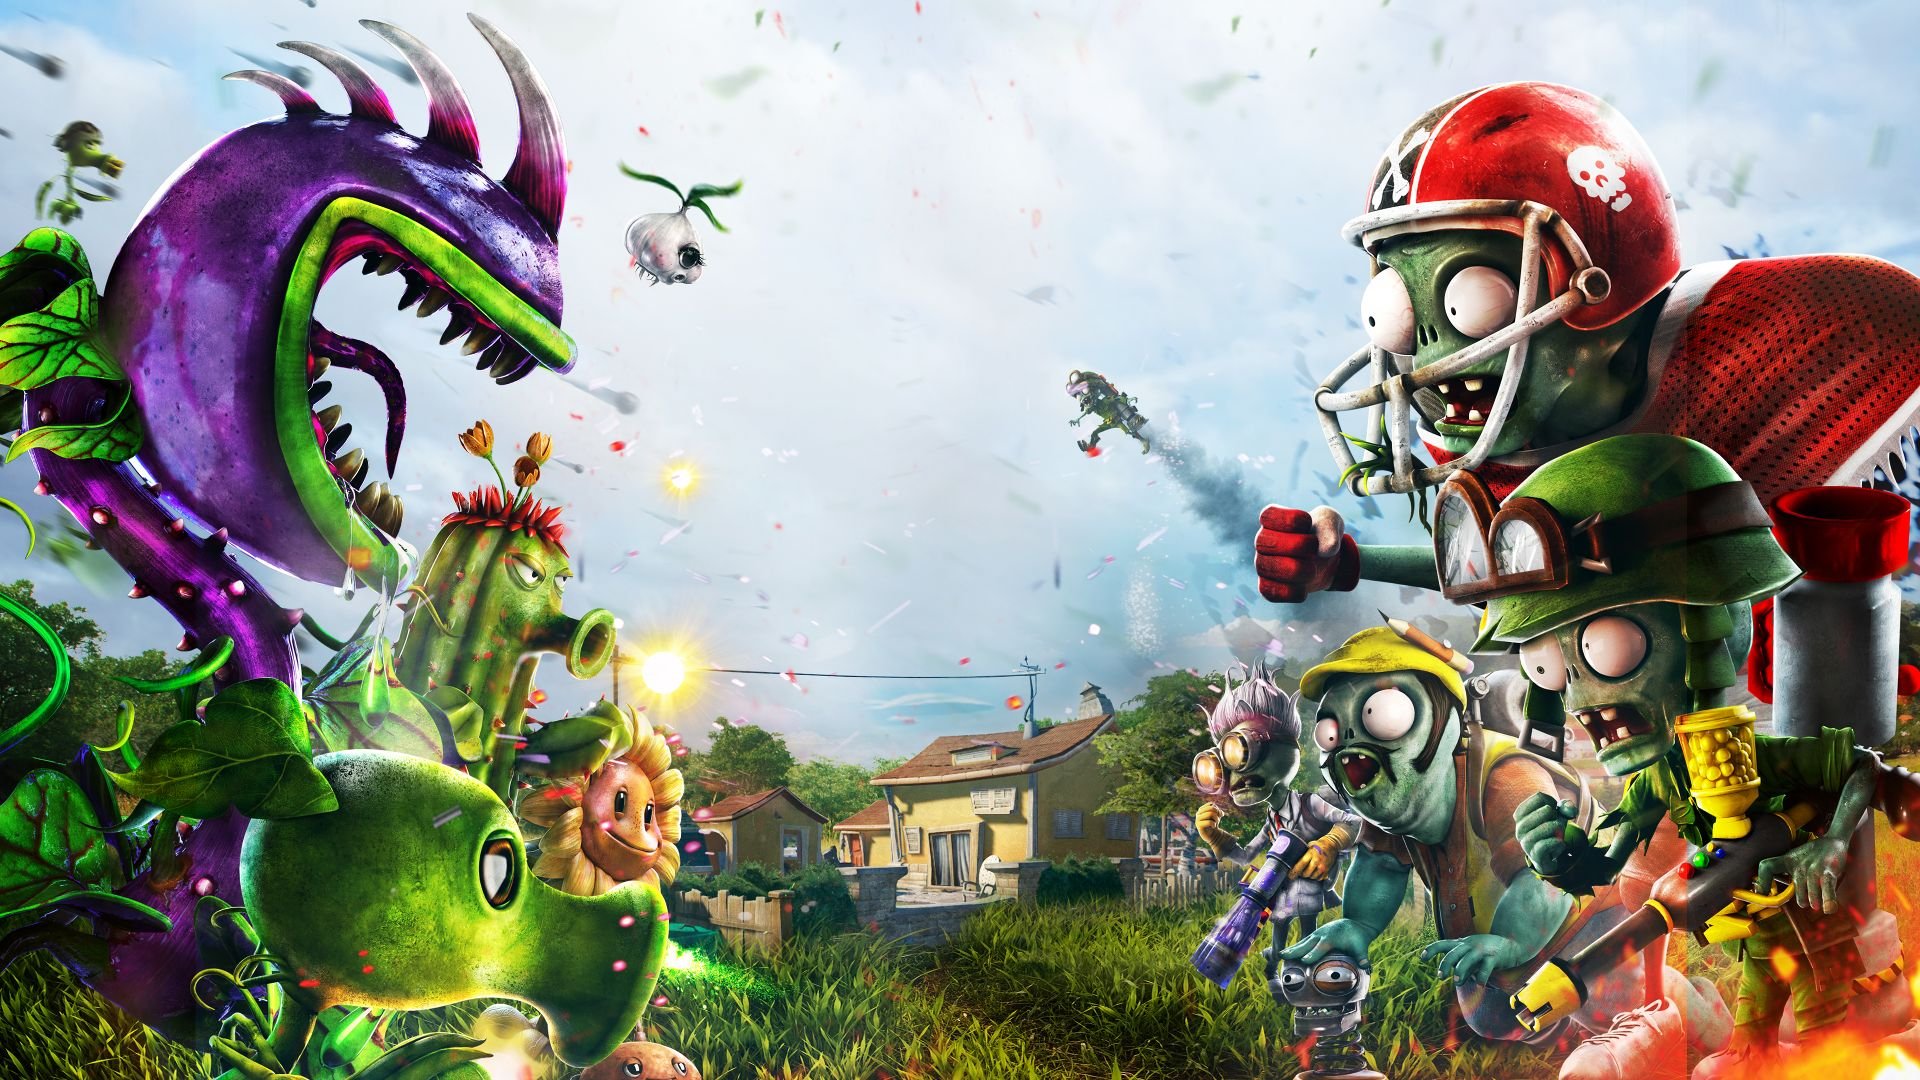 Pode rodar o jogo Plants vs. Zombies: Garden Warfare?